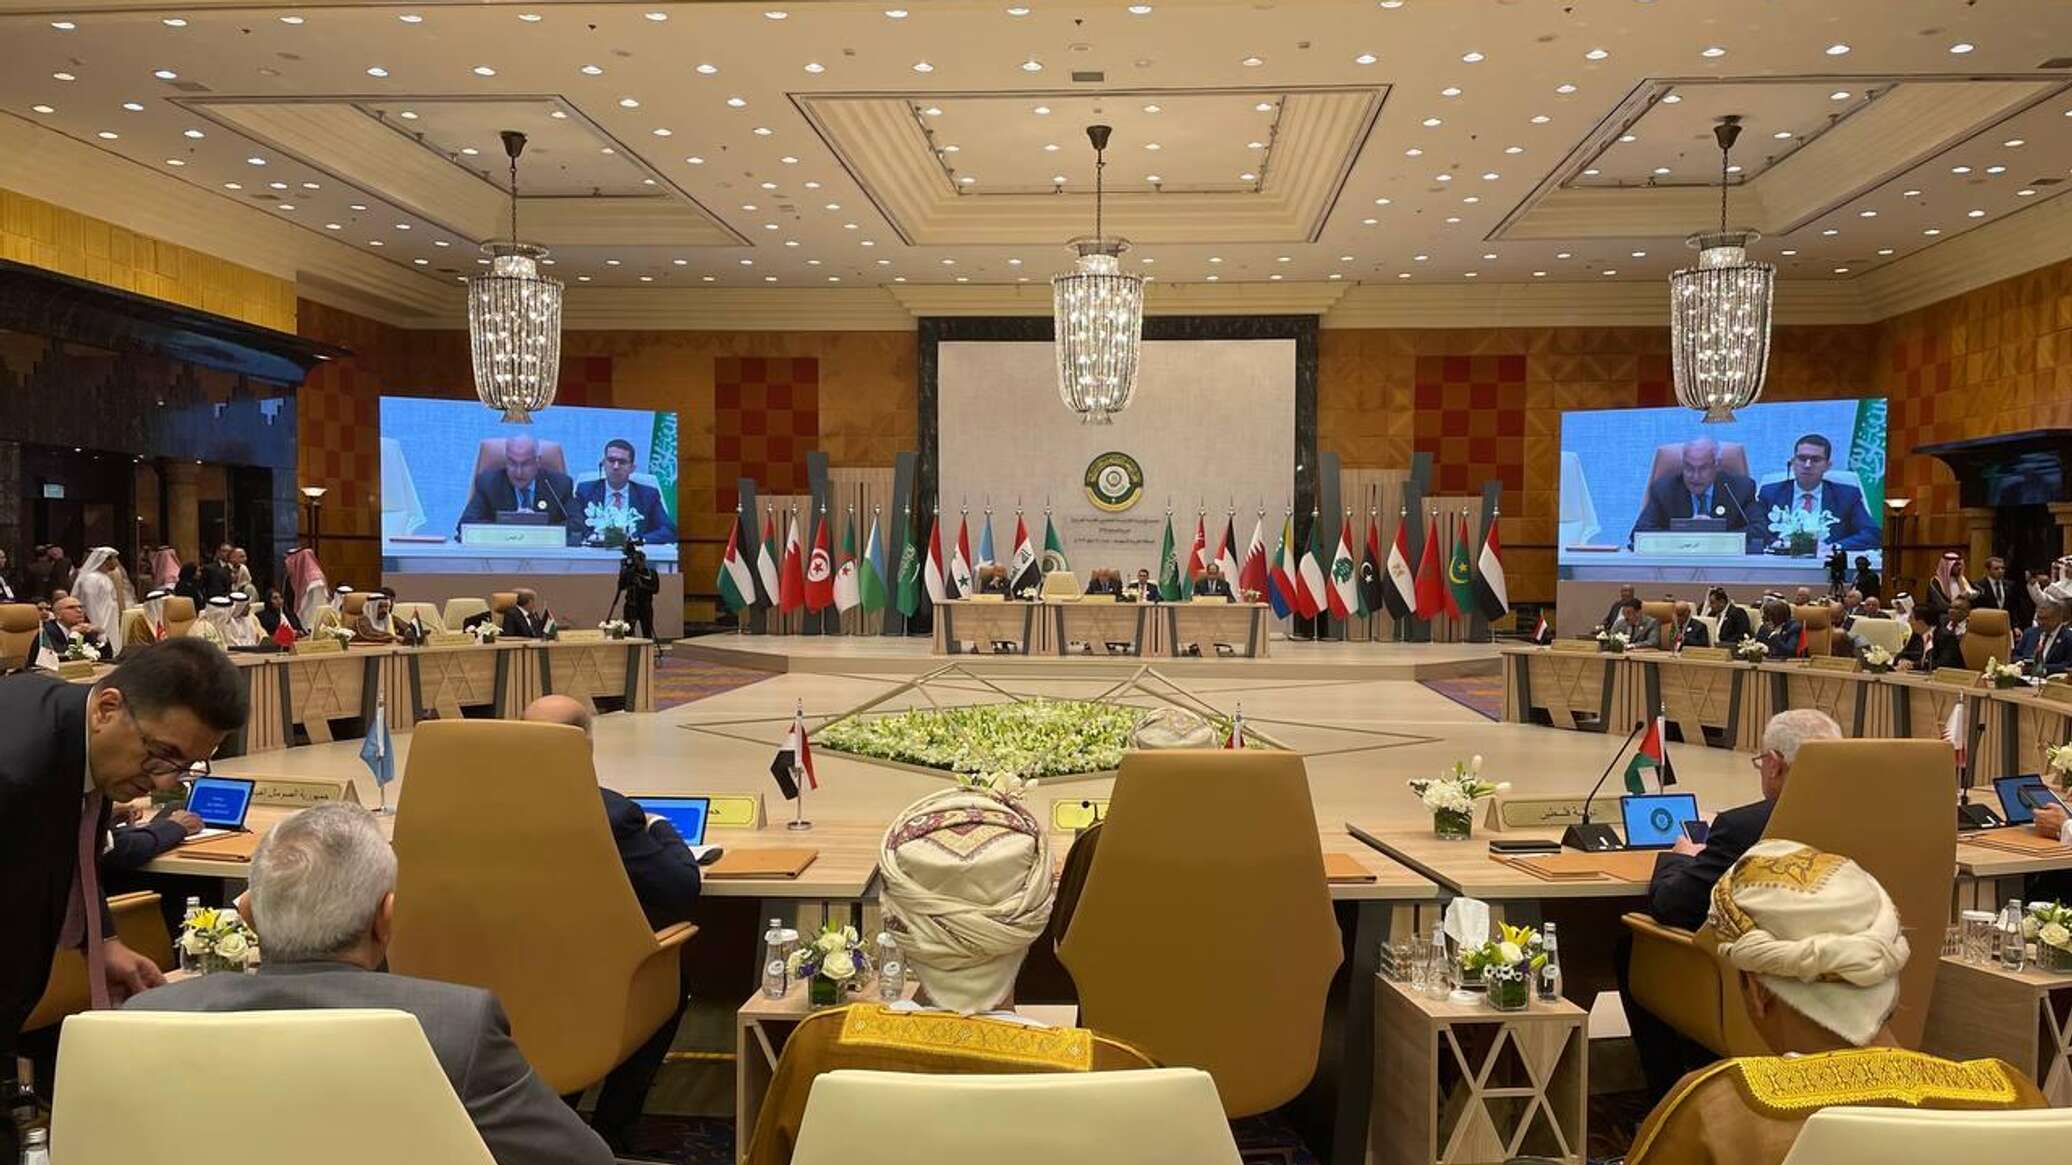 بث مباشر لفعاليات القمة العربية الإسلامية المشتركة "غير العادية" في الرياض... فيديو